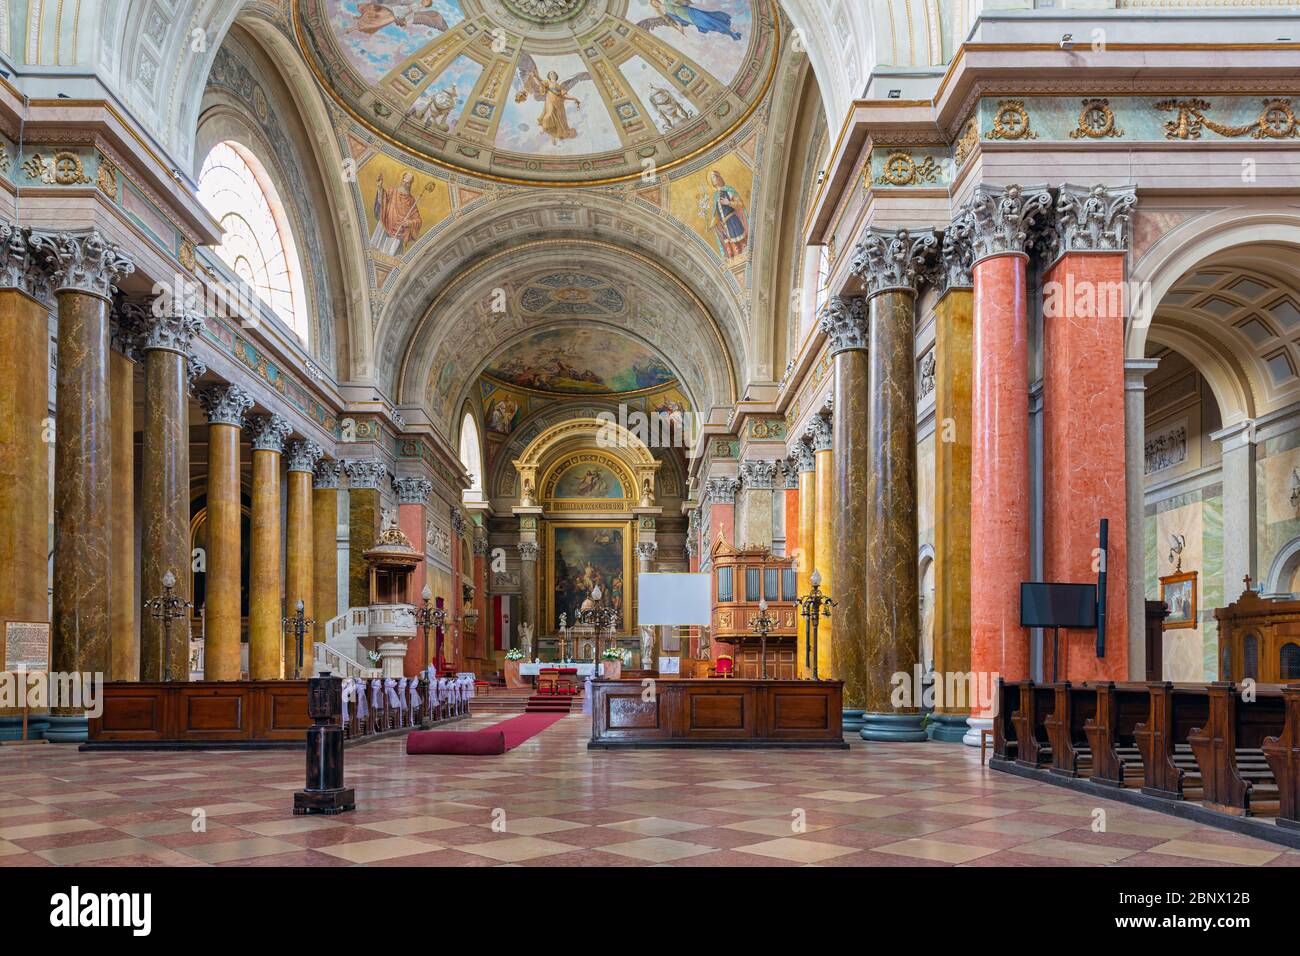 La basilique de la cathédrale intérieure s'appelle également cathédrale d'Eger à Eger, Hongrie Banque D'Images